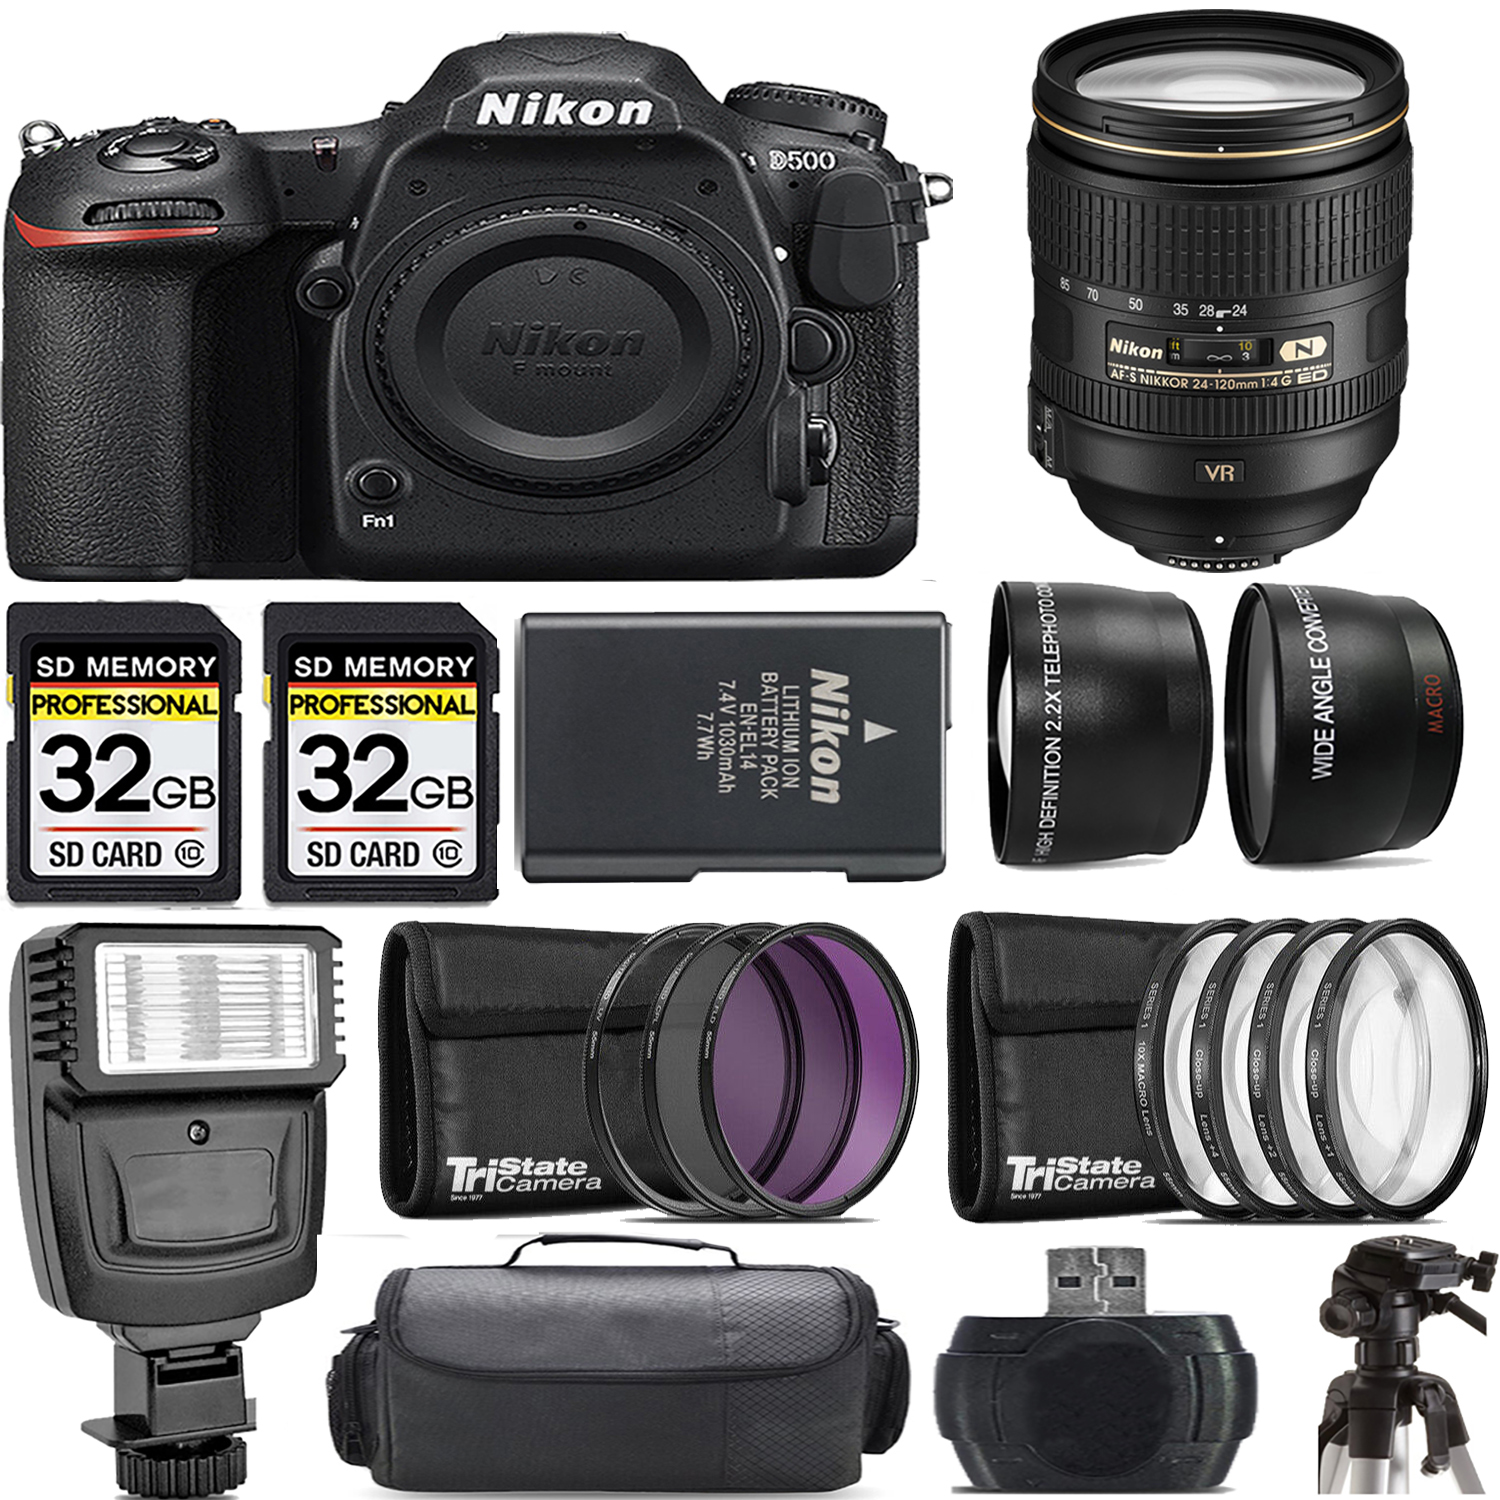 D500 DSLR Camera + 24-120mm f/4G ED VR Lens + Flash - Kit *FREE SHIPPING*